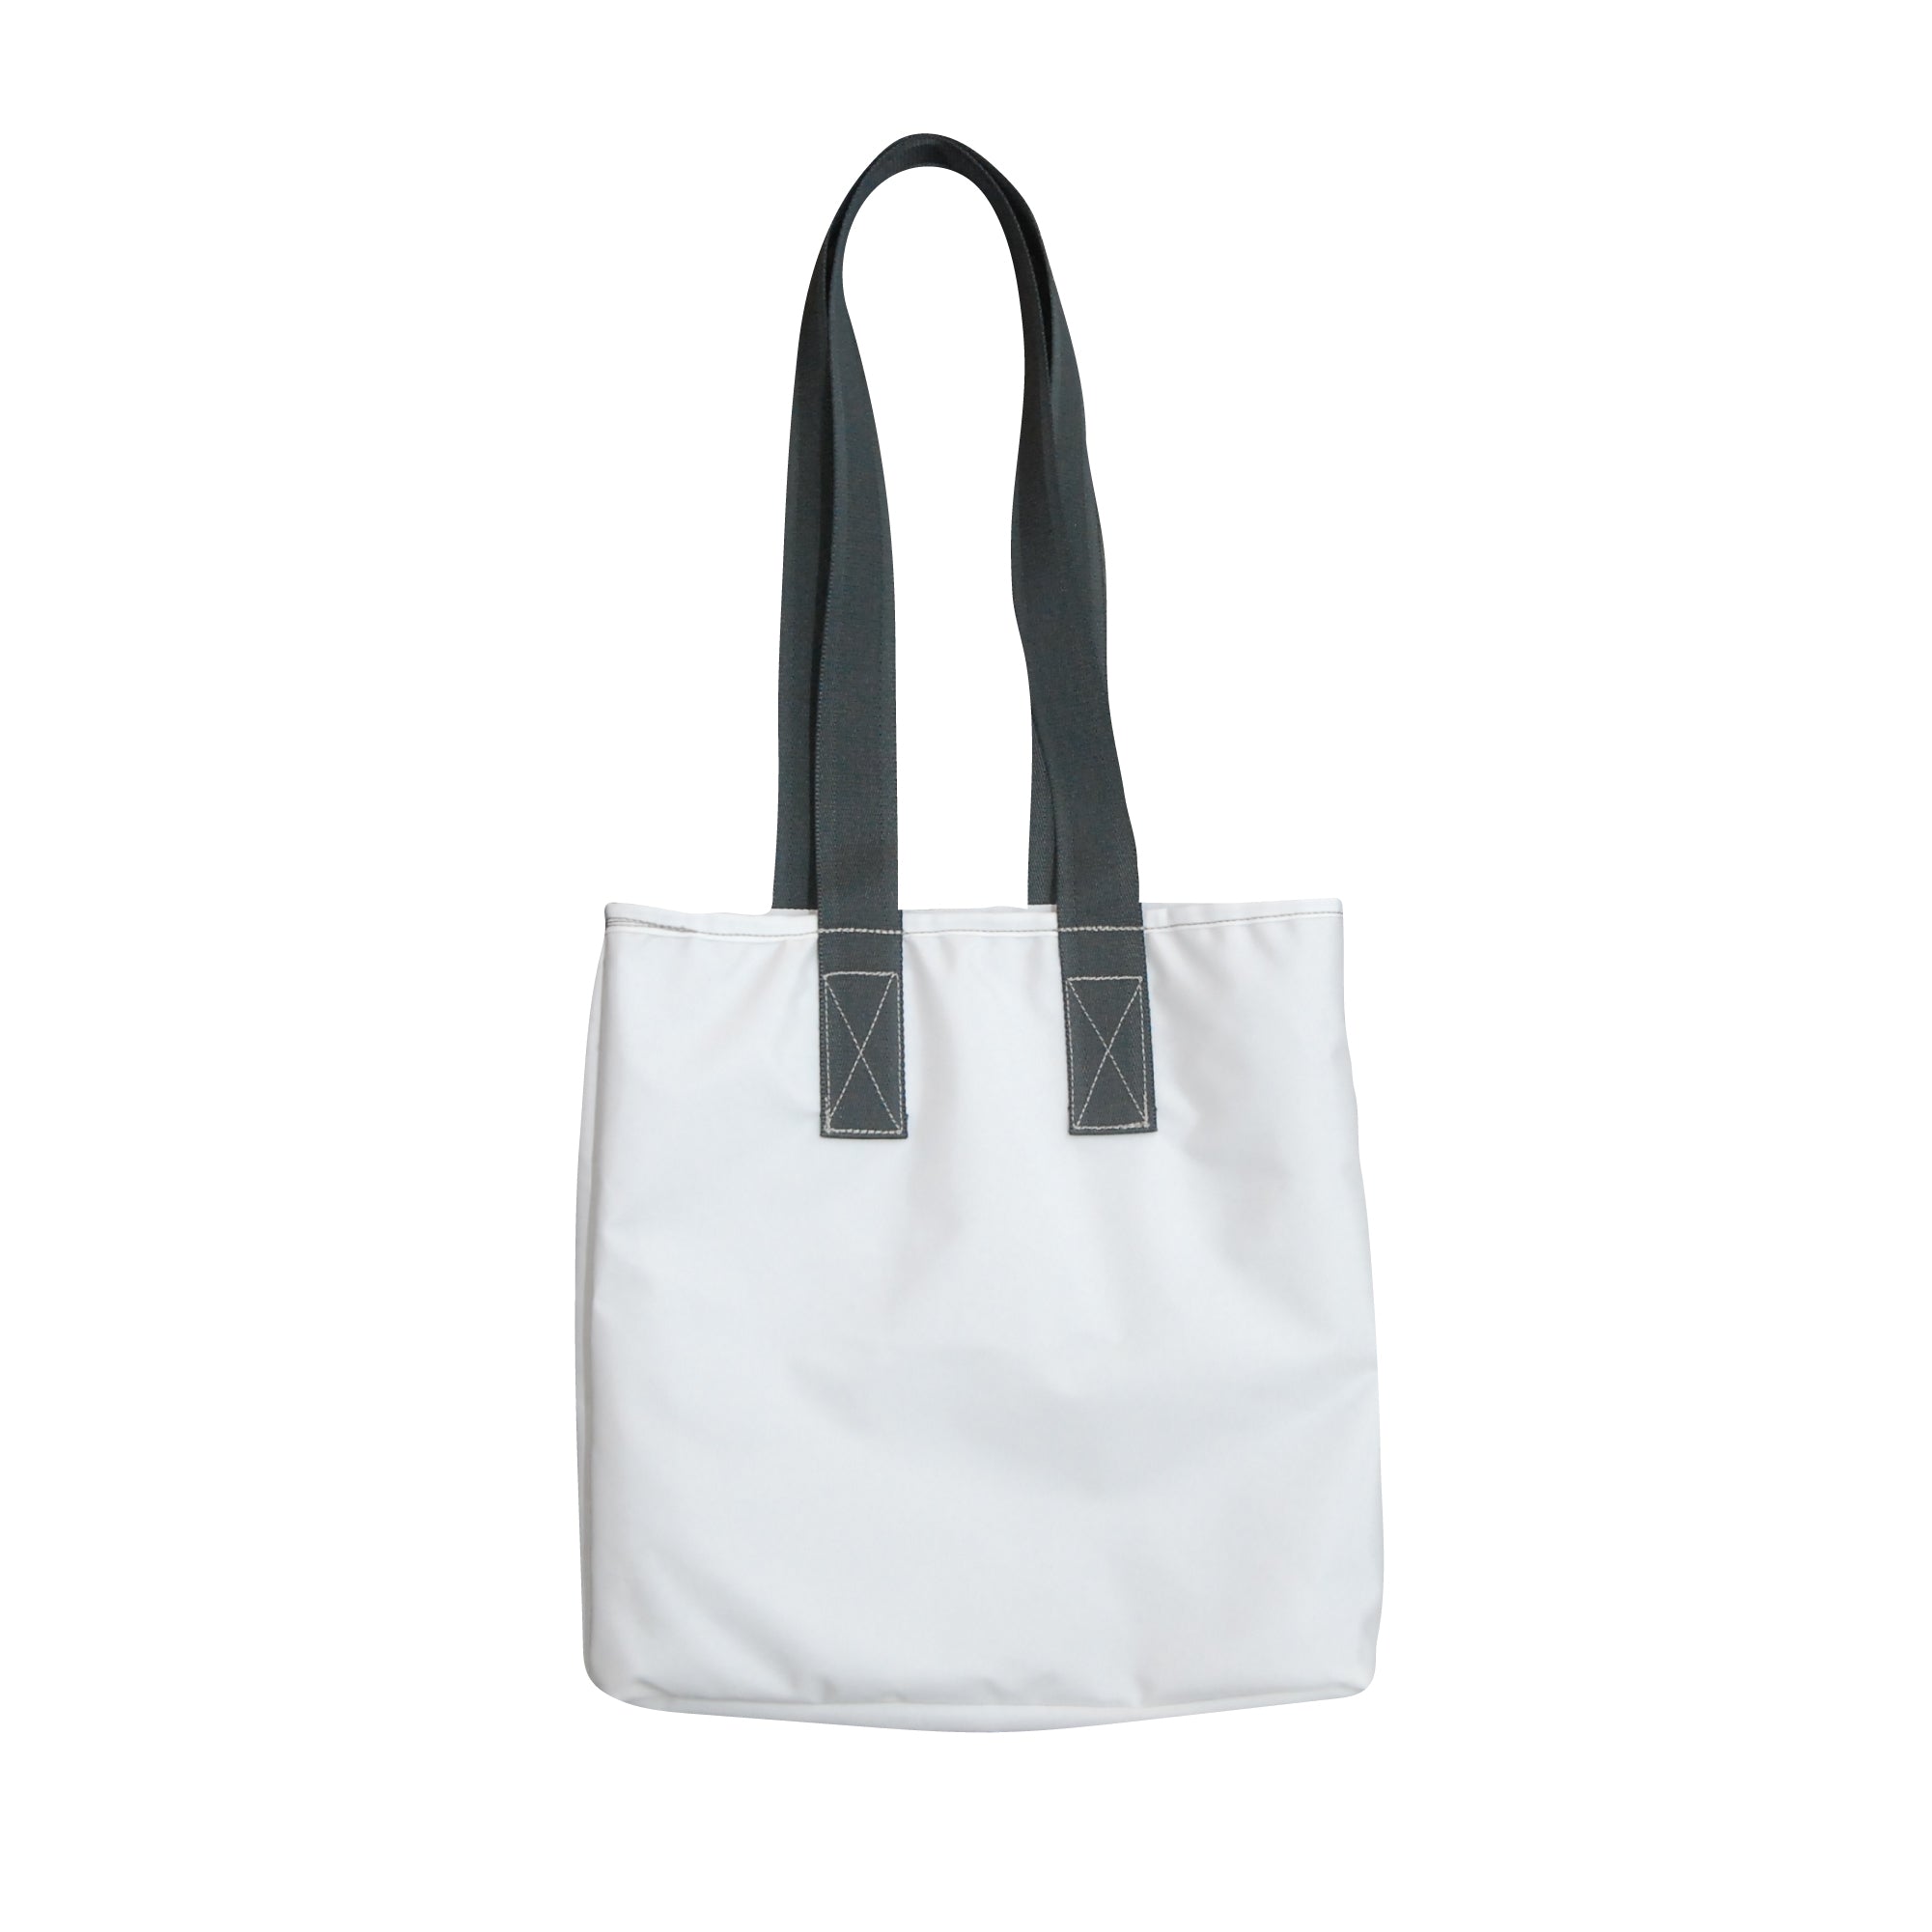 Medium Tote Bag / White